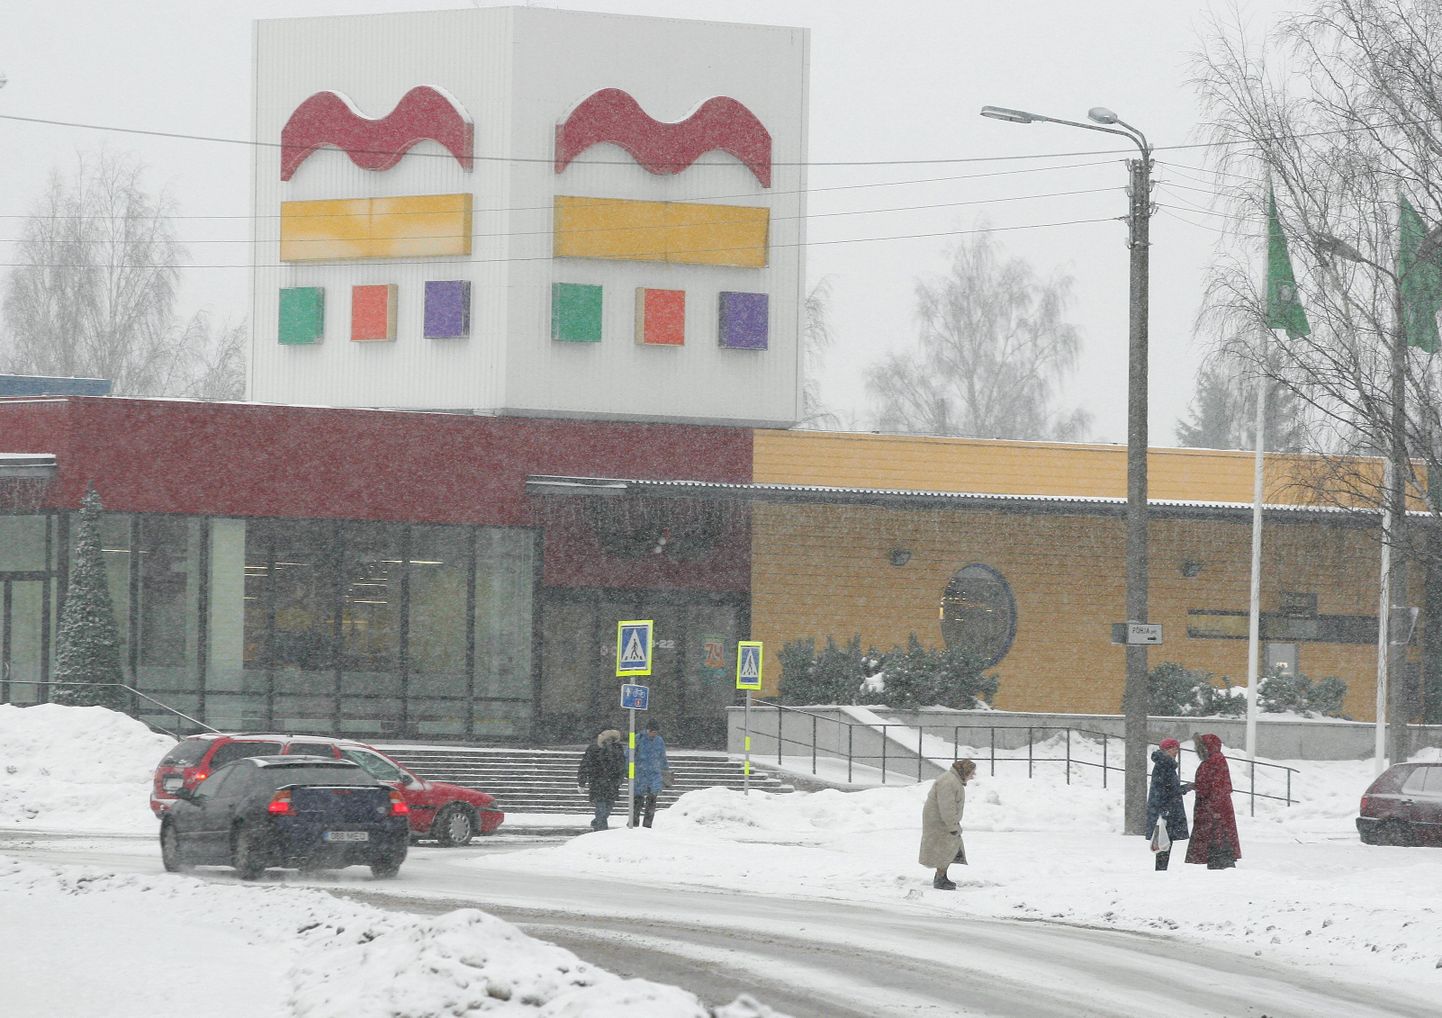 Ainus apteek, mis teadaolevalt on kõik päevad avatud, on Ridaküla apteegi filiaal Viljandi Maksimarketis.